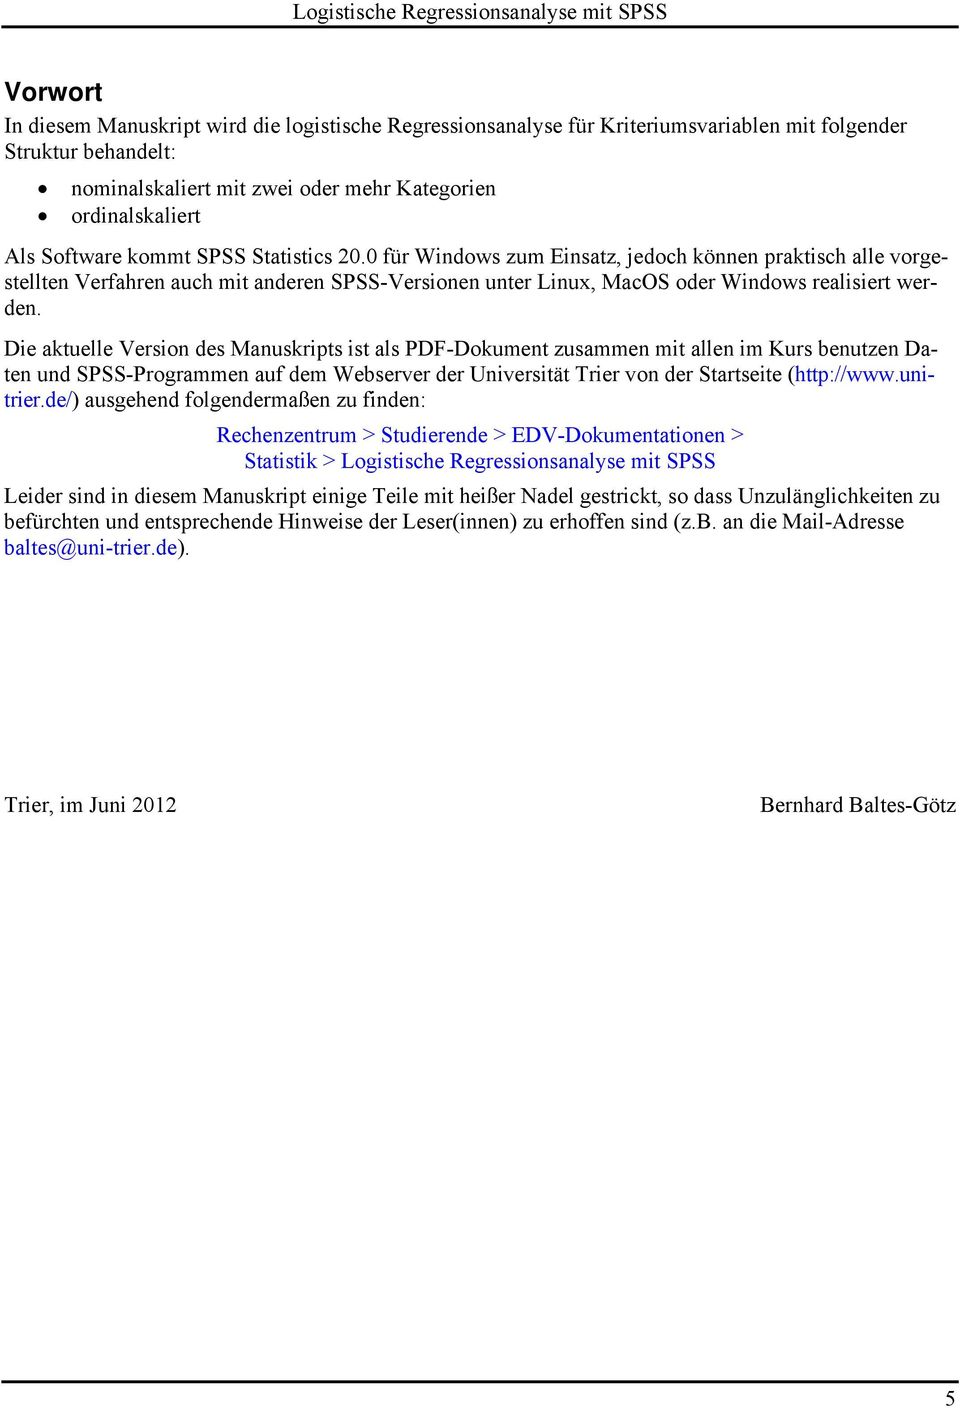 Di atull Vrsion ds Manusripts ist als PDF-Doumnt zusammn mit alln im Kurs bnutzn Datn und SPSS-Programmn auf dm Wbsrvr dr Univrsität Trir von dr Startsit (http://www.unitrir.